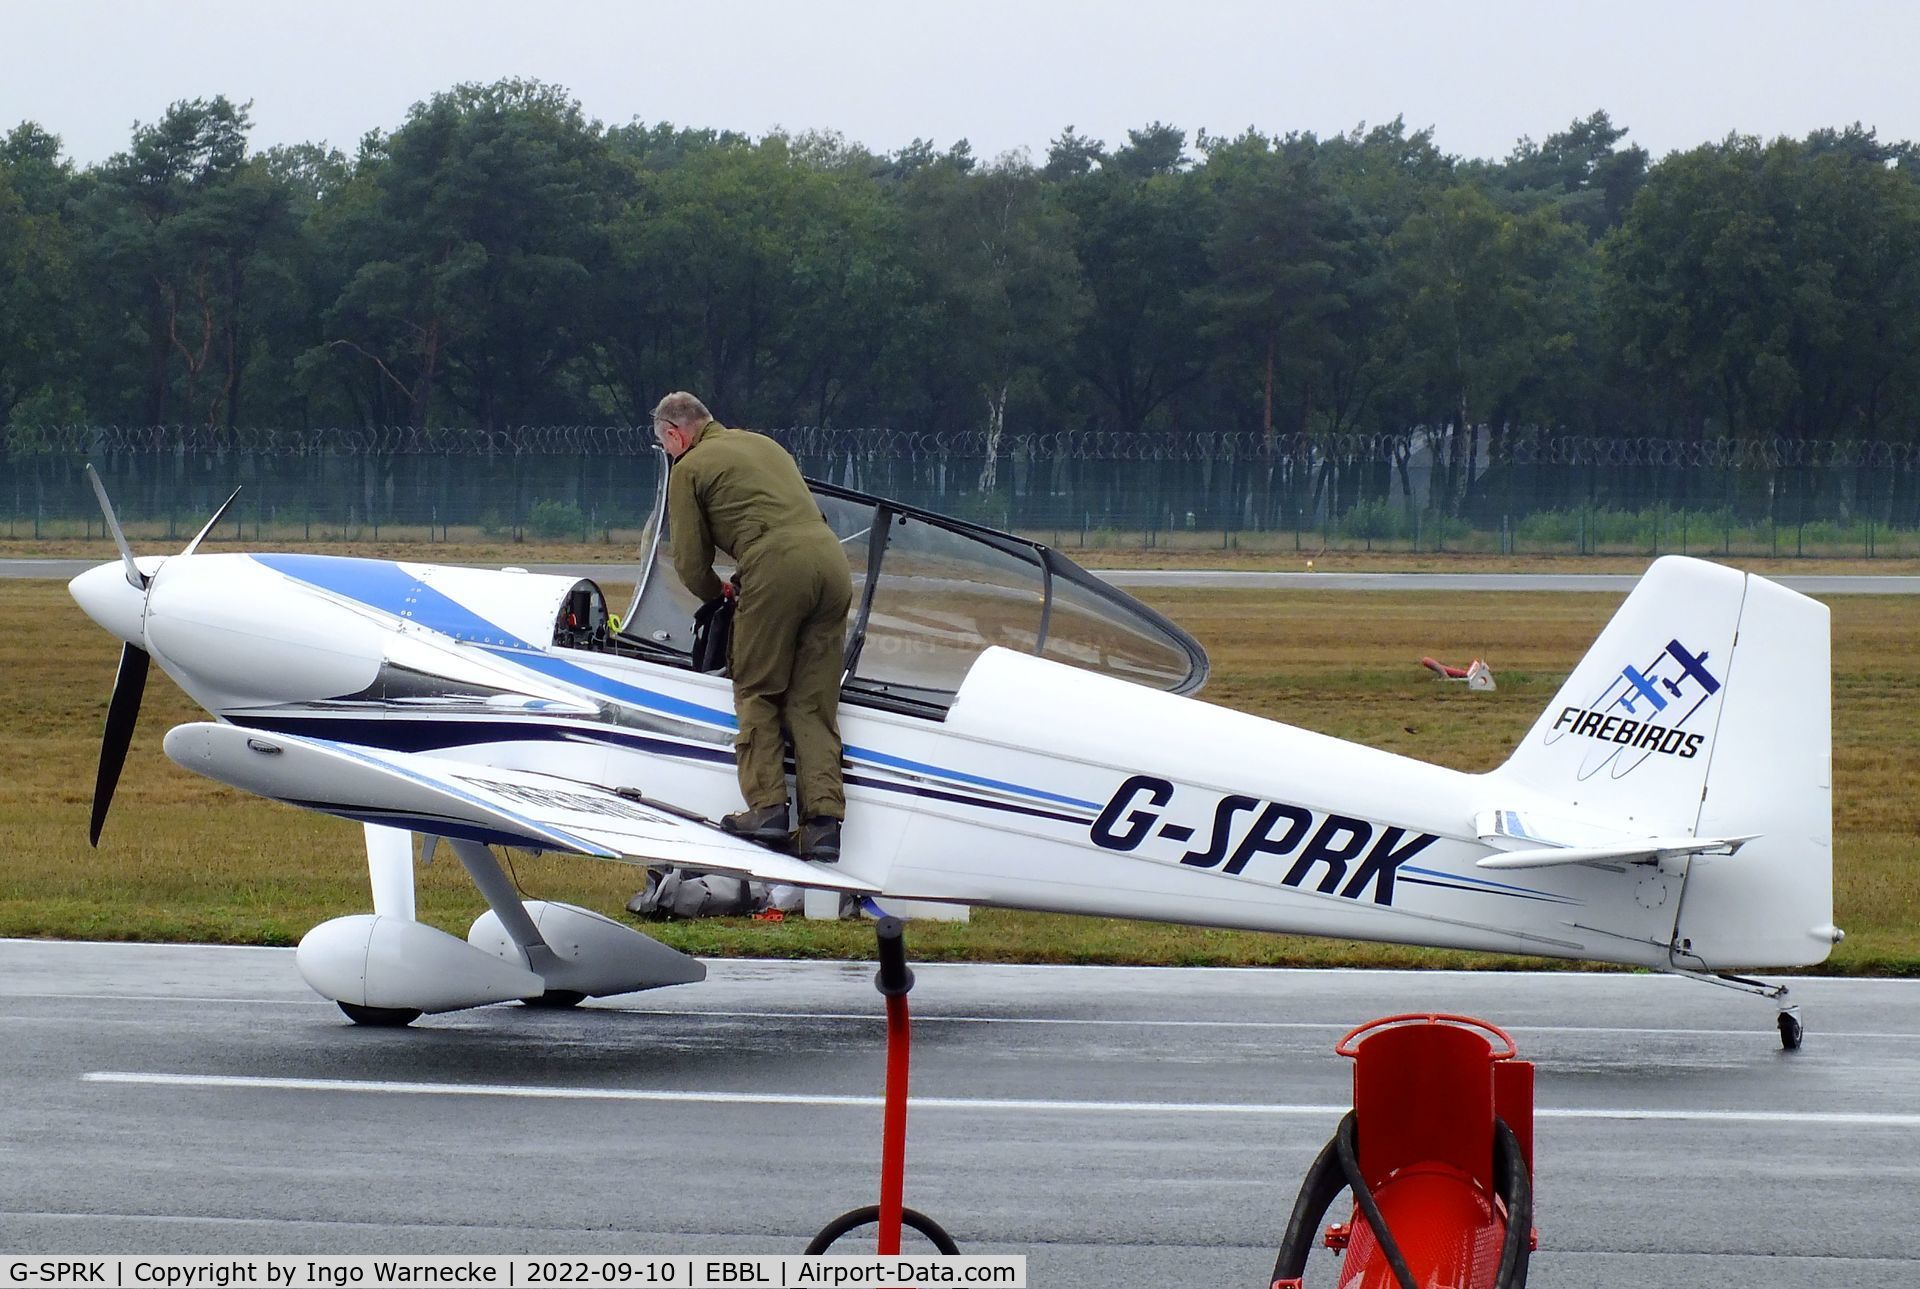 G-SPRK, 1994 Vans RV-4 C/N 845, Vans RV-4 of the Firebirds aerobatic team at the 2022 Sanicole Spottersday at Kleine Brogel air base